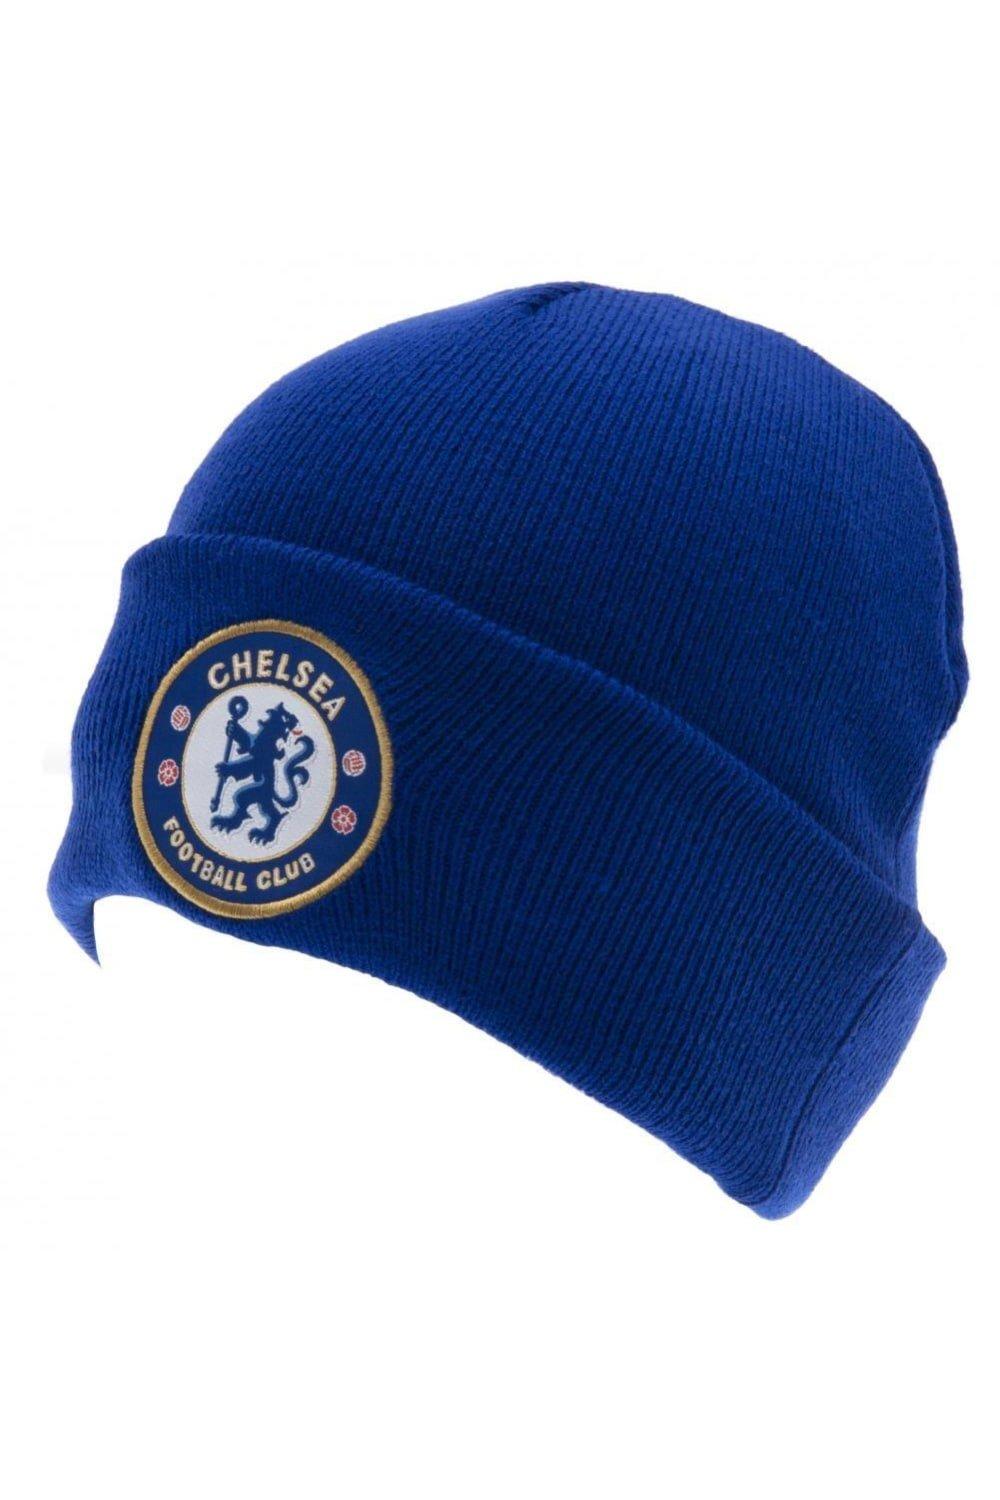 Официальная вязаная шапка с отворотом Chelsea FC, синий шапка гриффиндор с гербом универсальный детский размер